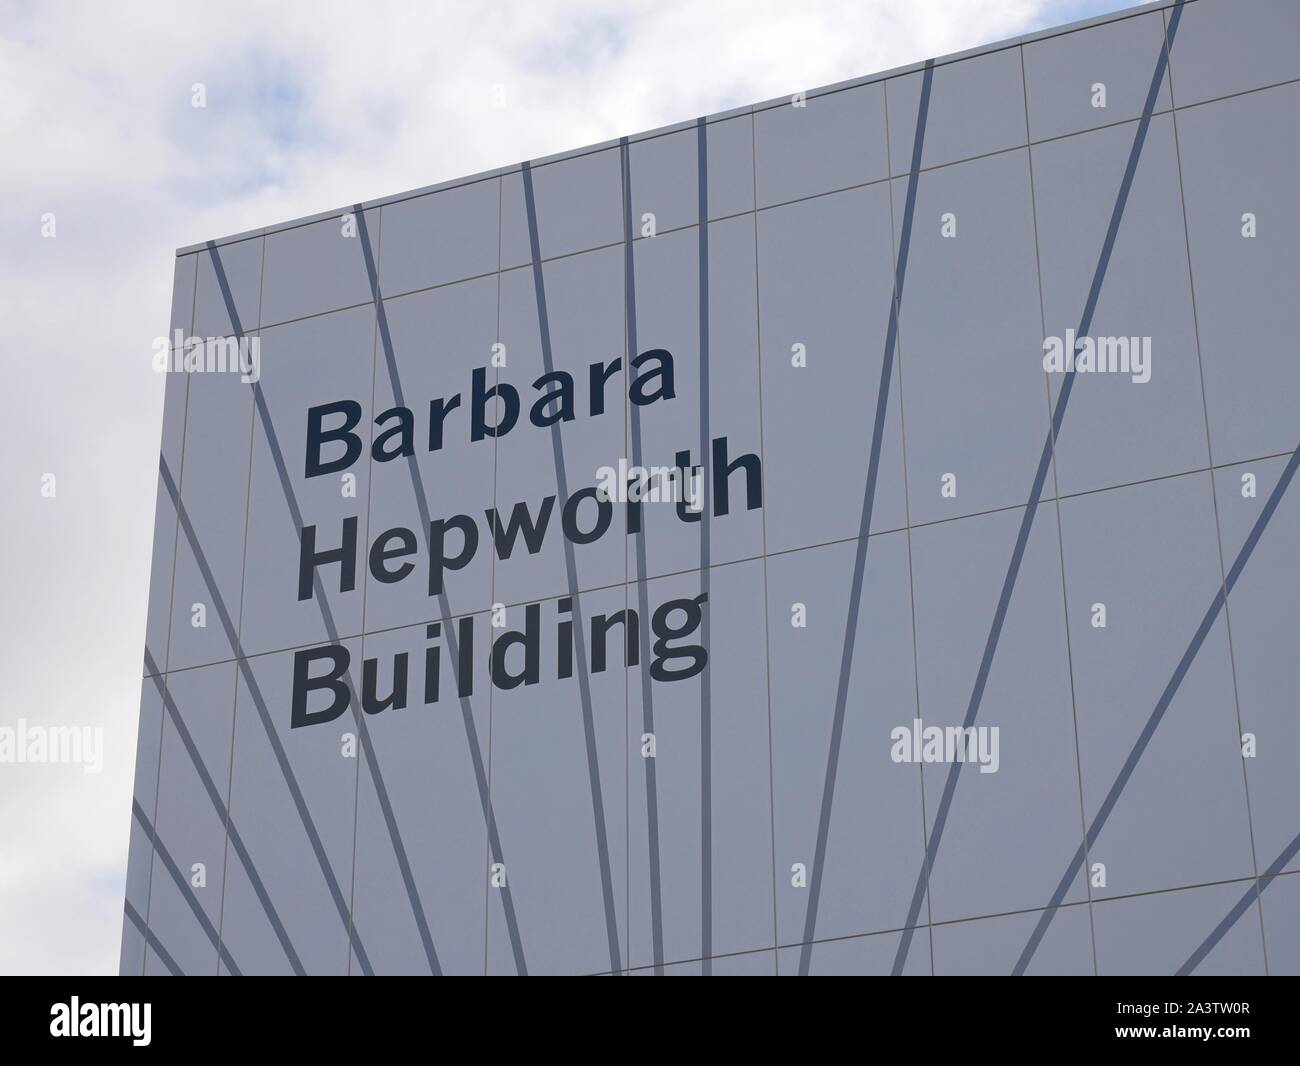 Le Barbara Hepworth Building à l'Université de Huddersfield Yorhshire Angleterre Banque D'Images